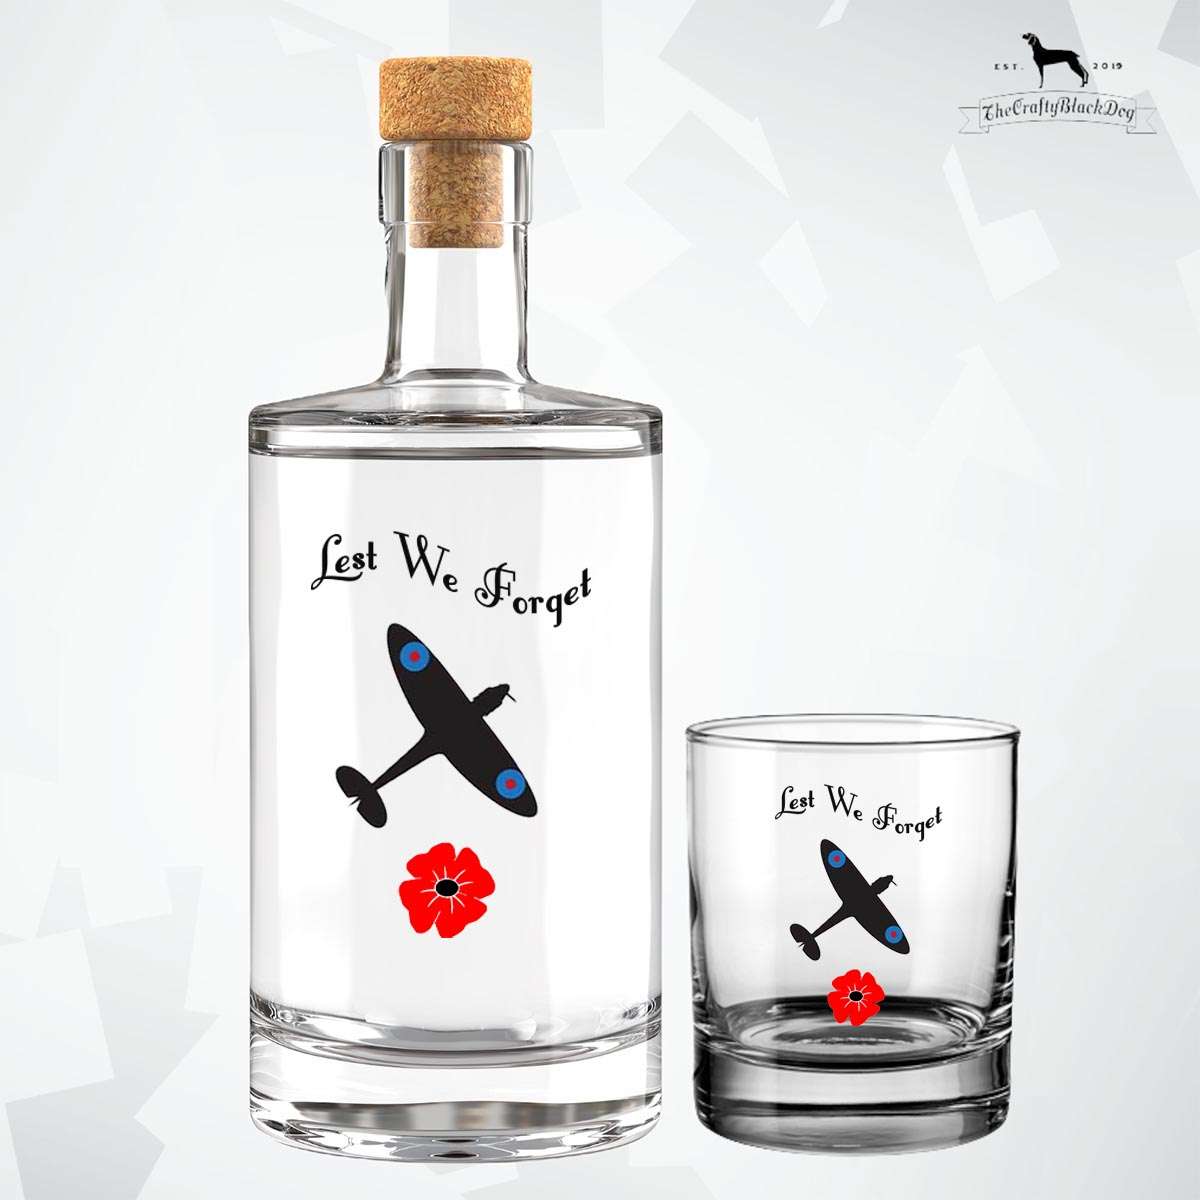 Lest We Forget - Spitfire - Fill Your Own Spirit Bottle